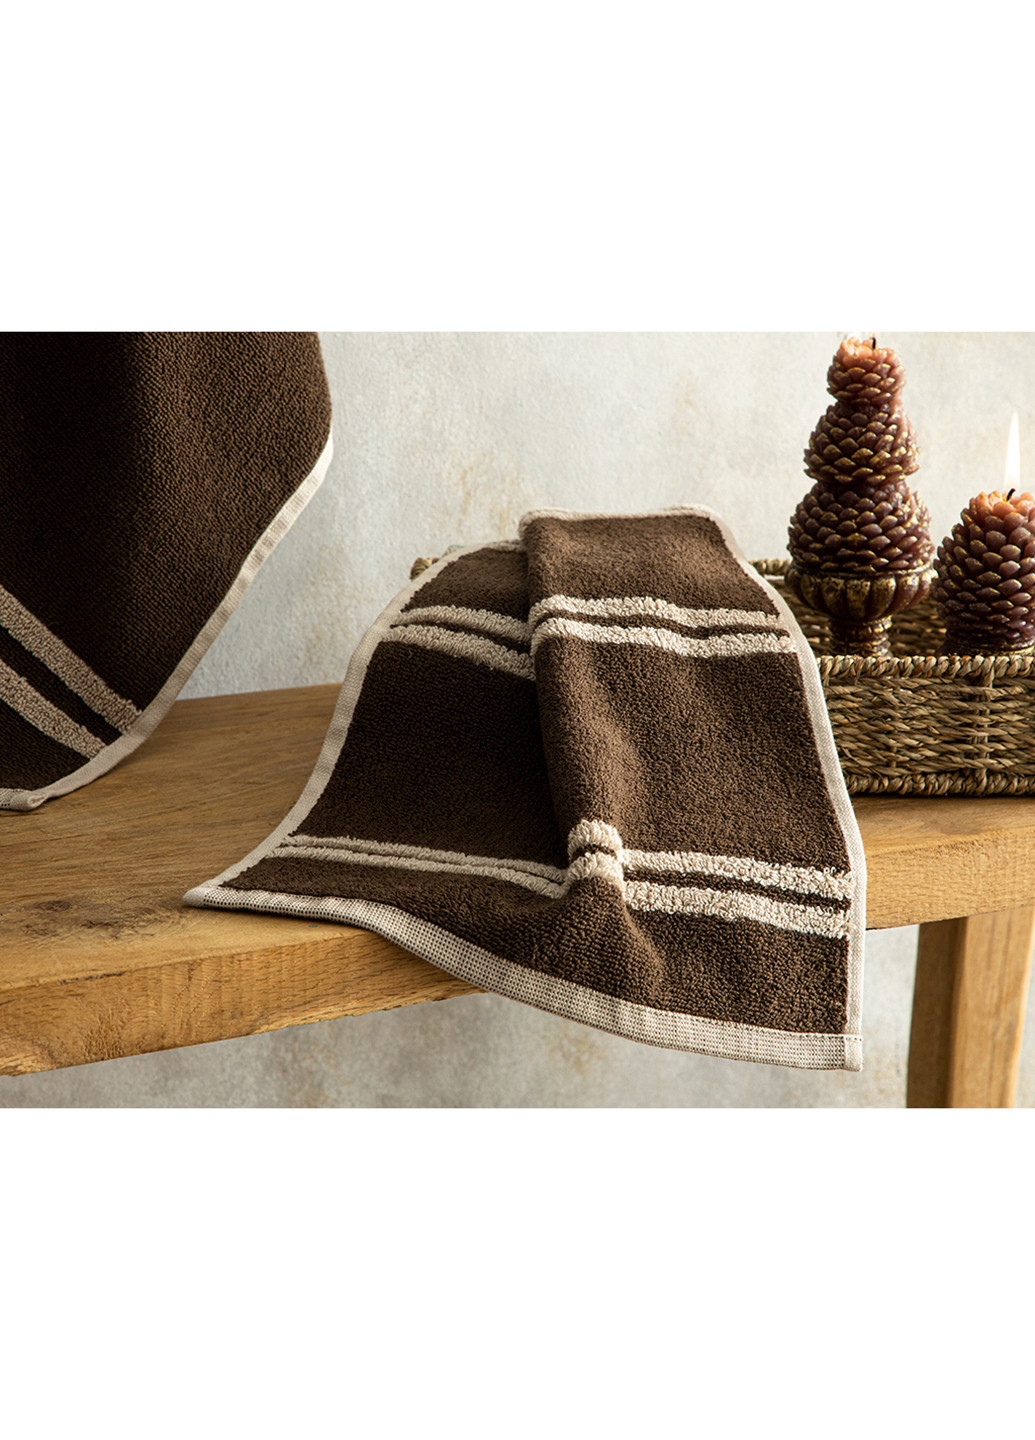 English Home полотенце для рук, 30х40 см полоска бежевый производство - Турция